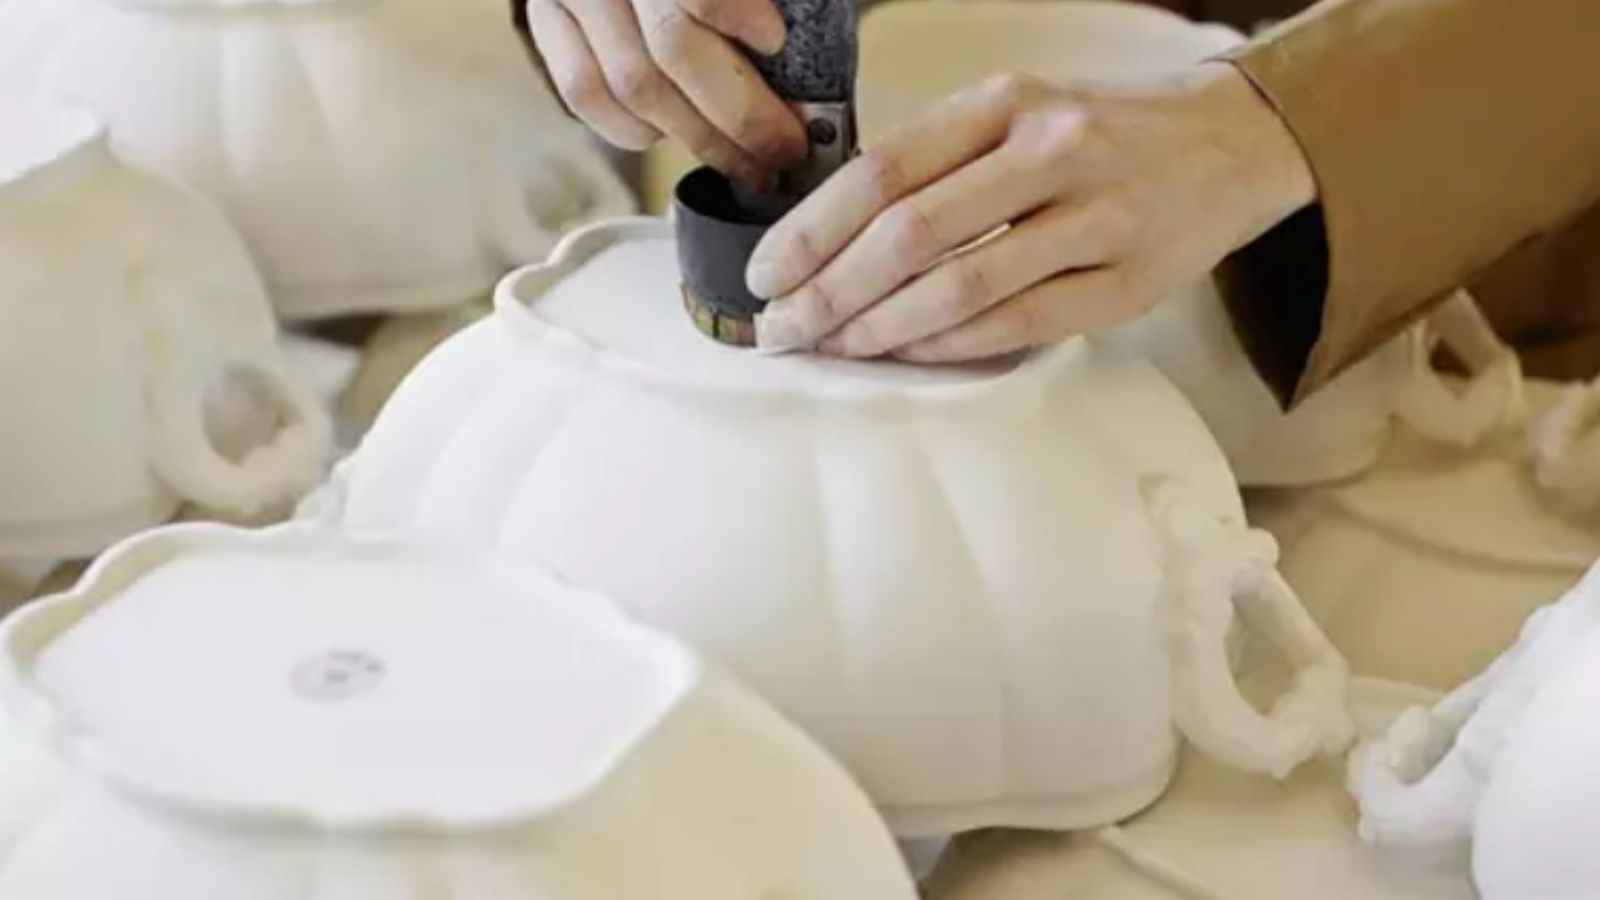 Fotografía de las manos de una artesana trabajando en piezas de cerámica blanca